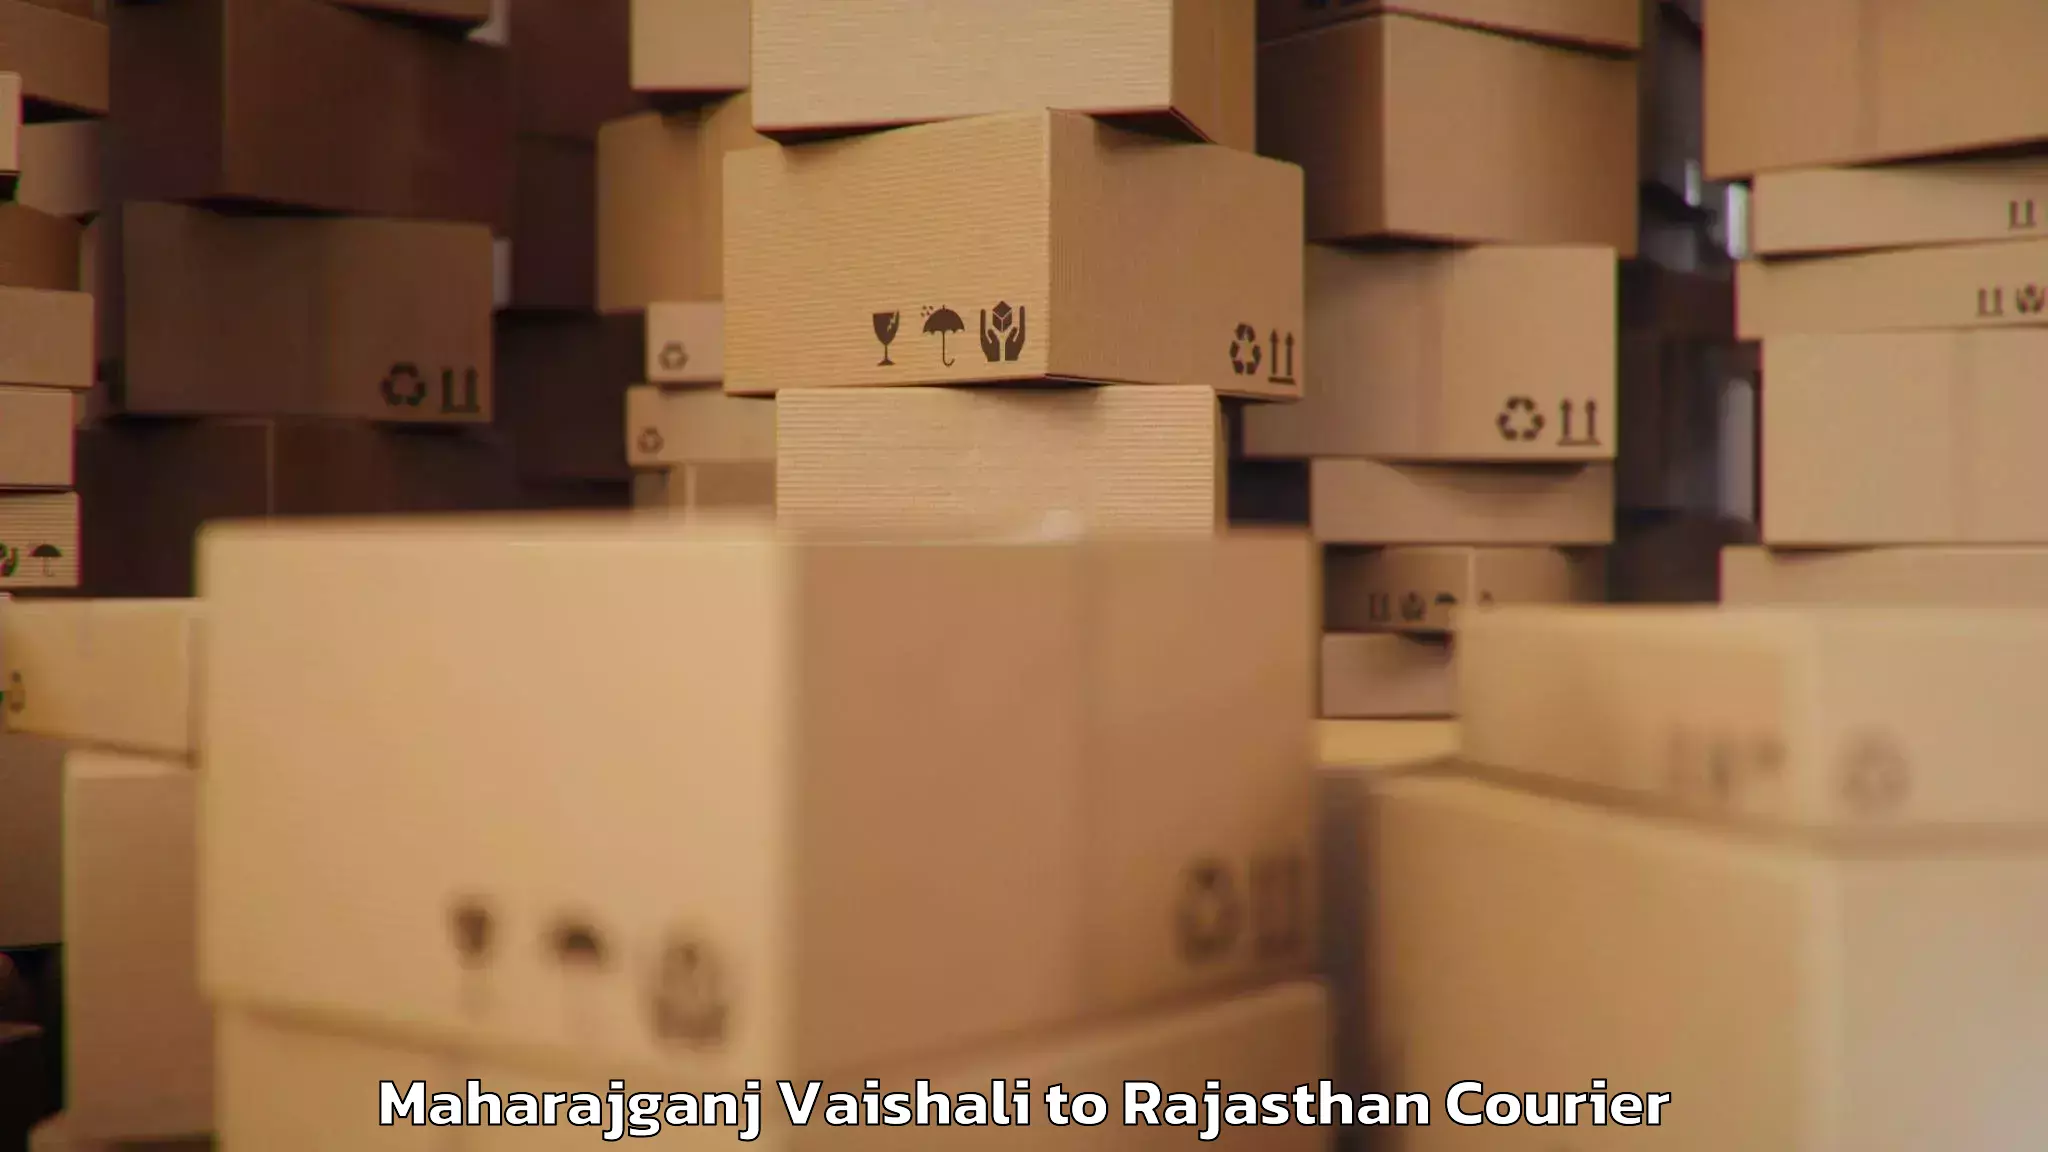 Door-to-door baggage service Maharajganj Vaishali to Rajasthan